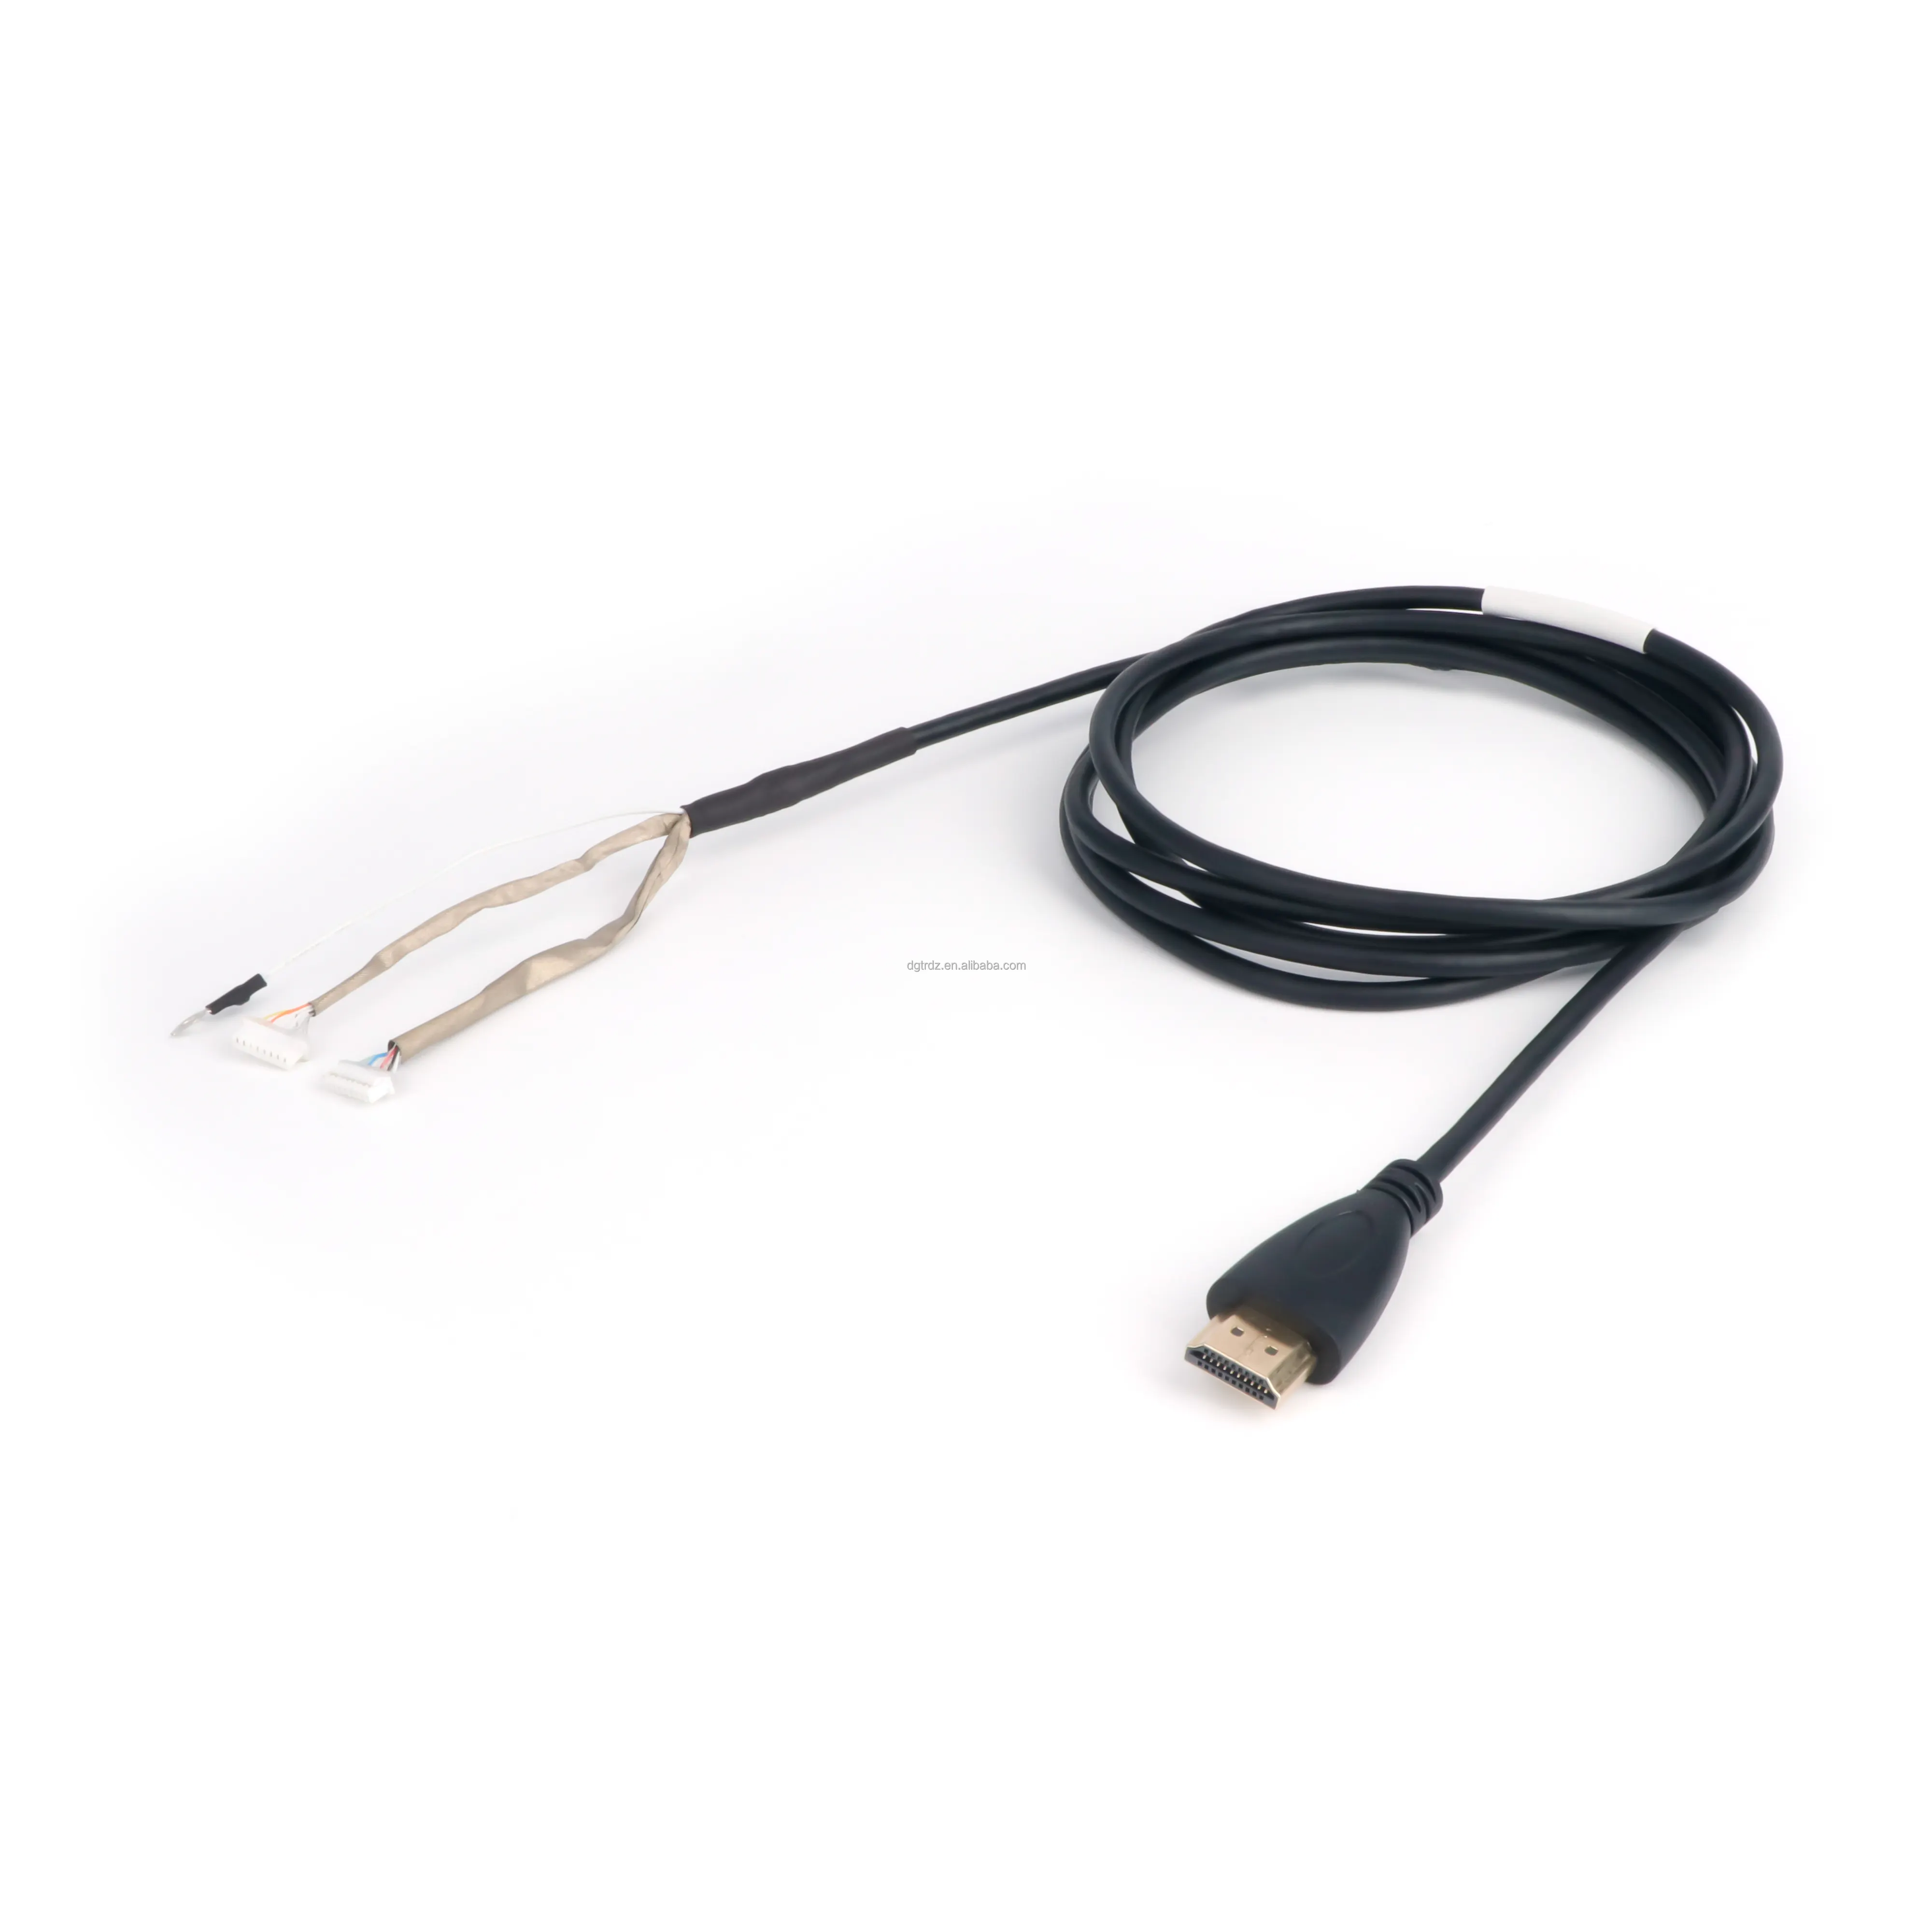 High Definition Multimedia-Audiosignal kabel Kunden spezifischer Kabelbaum mit reinem Kupfer leiter